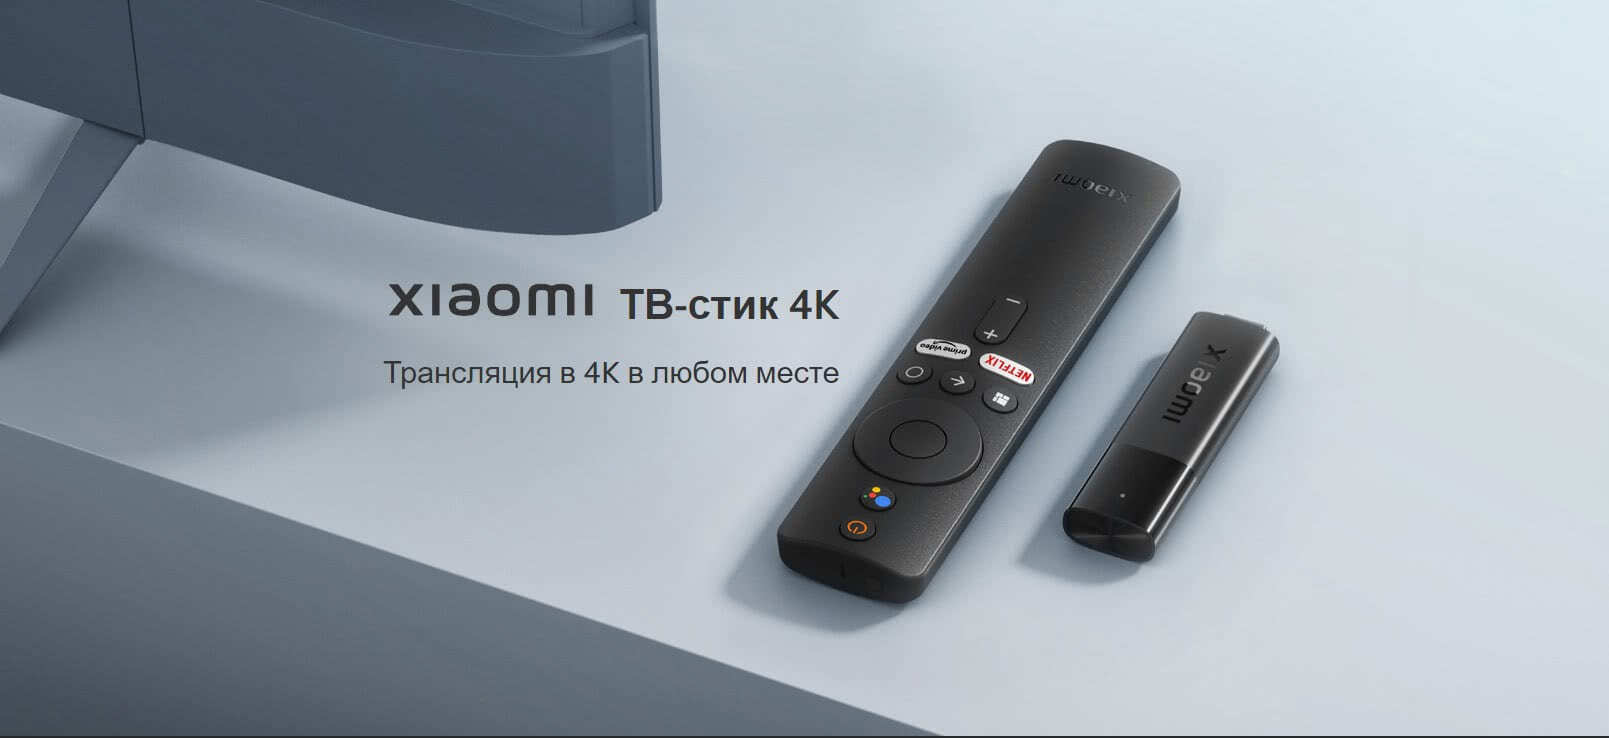 Xiaomi TV Stick 4k ТВ-стик 4K Трансляция в 4K в любом месте